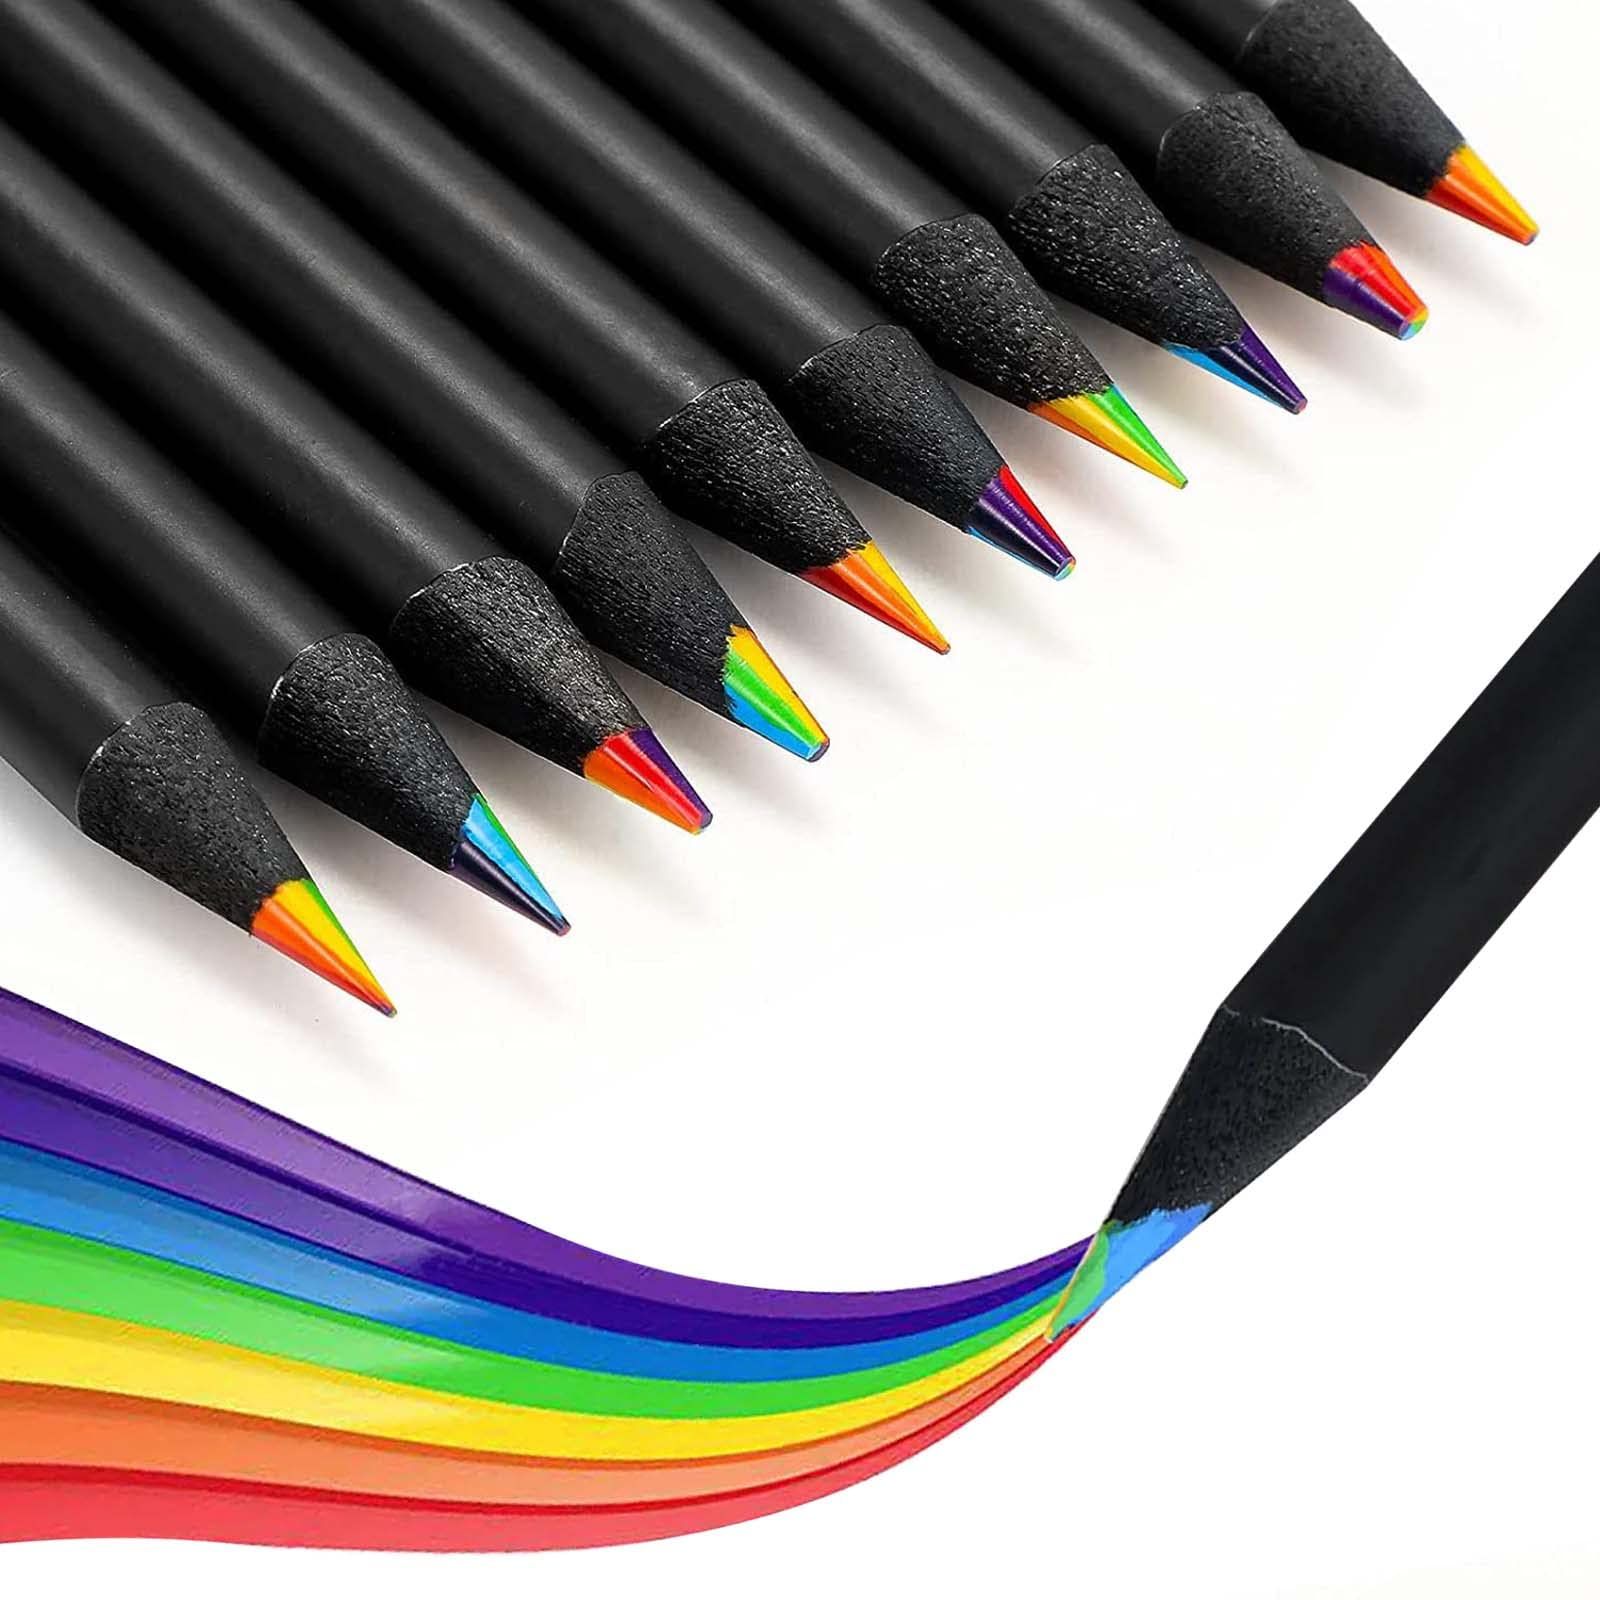 SZSS 色鉛筆(12本入り) 7色合 1 ブラックウッド レインボー色鉛筆 多色鉛筆 子供用絵画 着色 スケッチ パーティーのデコレーションに